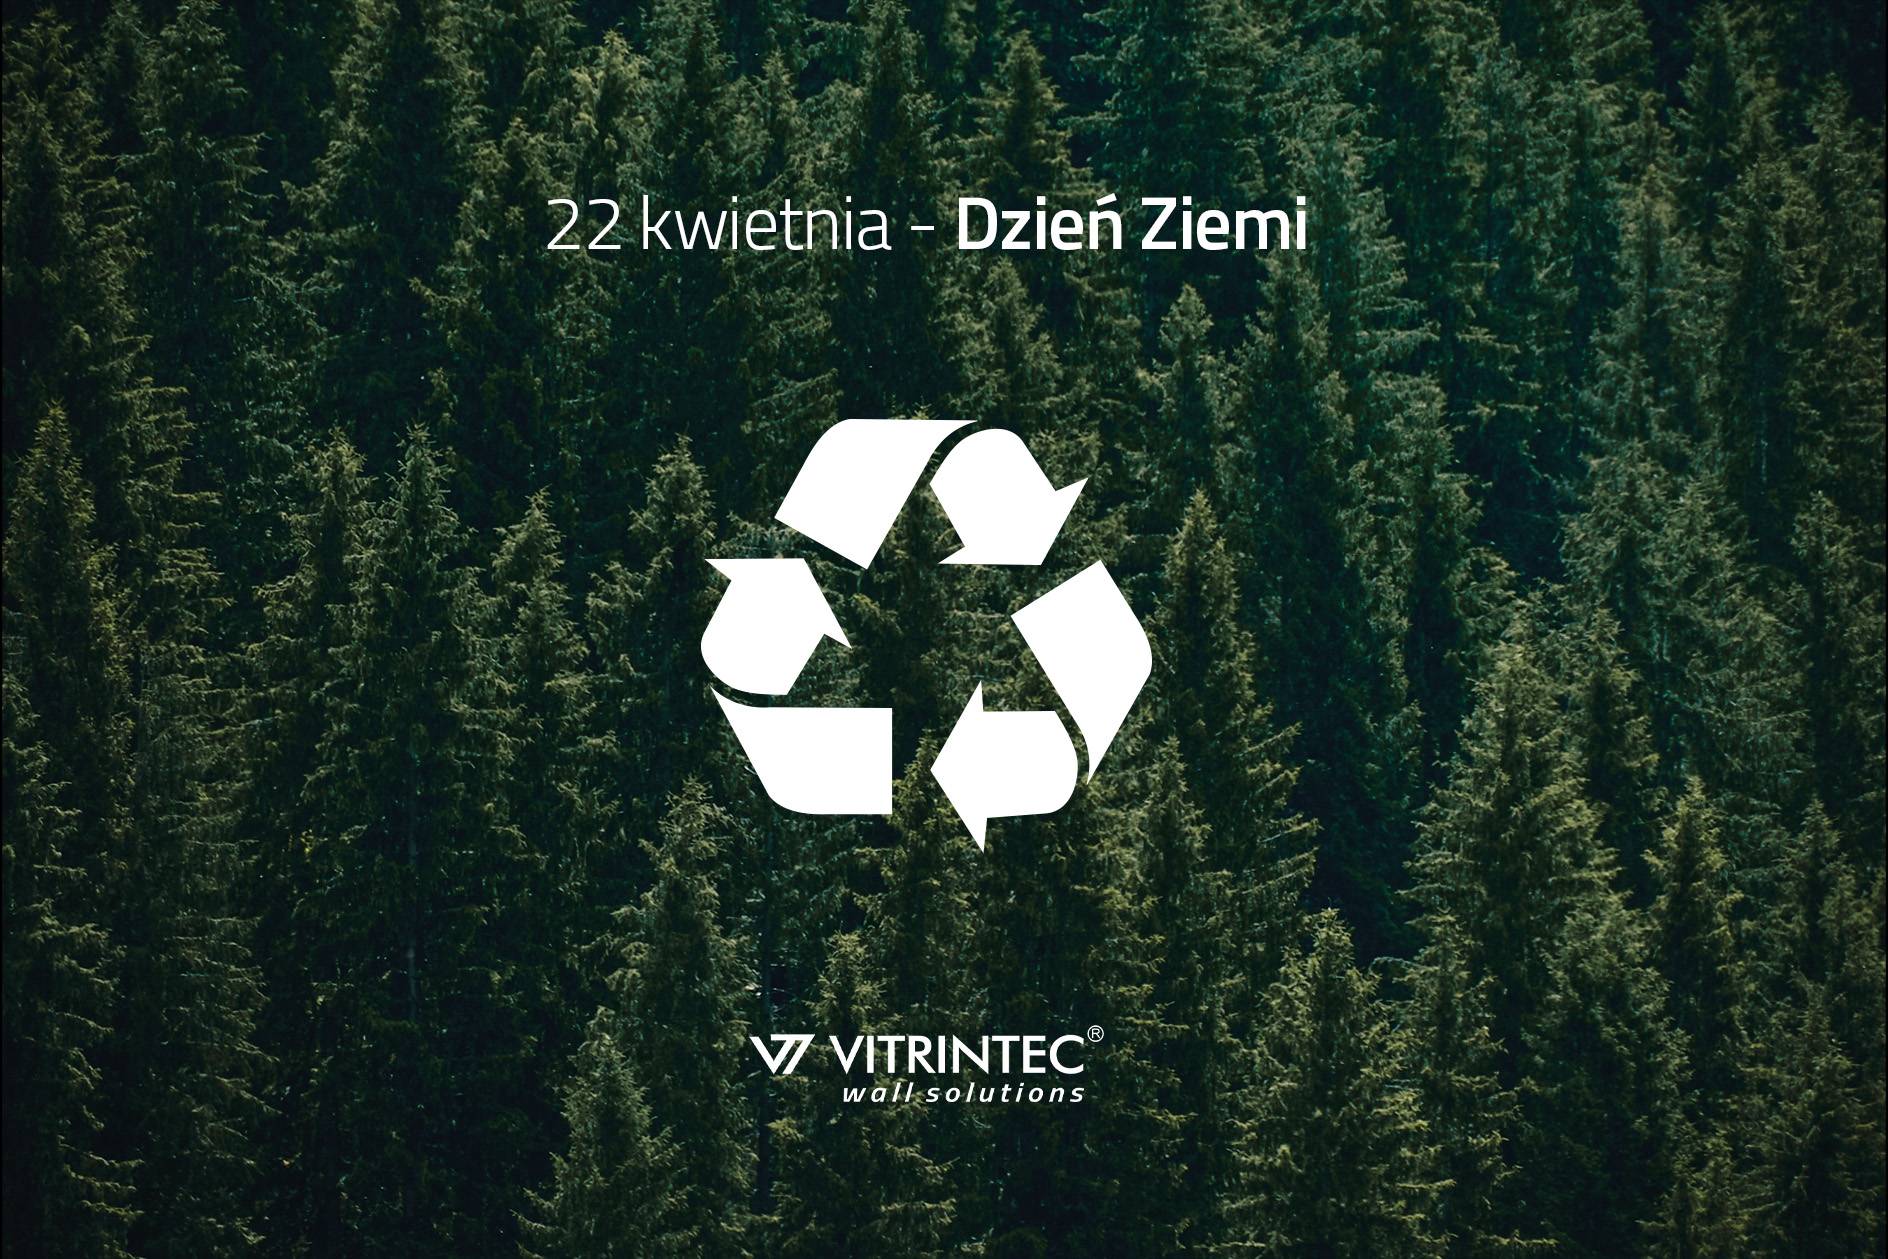 Dzień Ziemi - recycling w Vitrintec